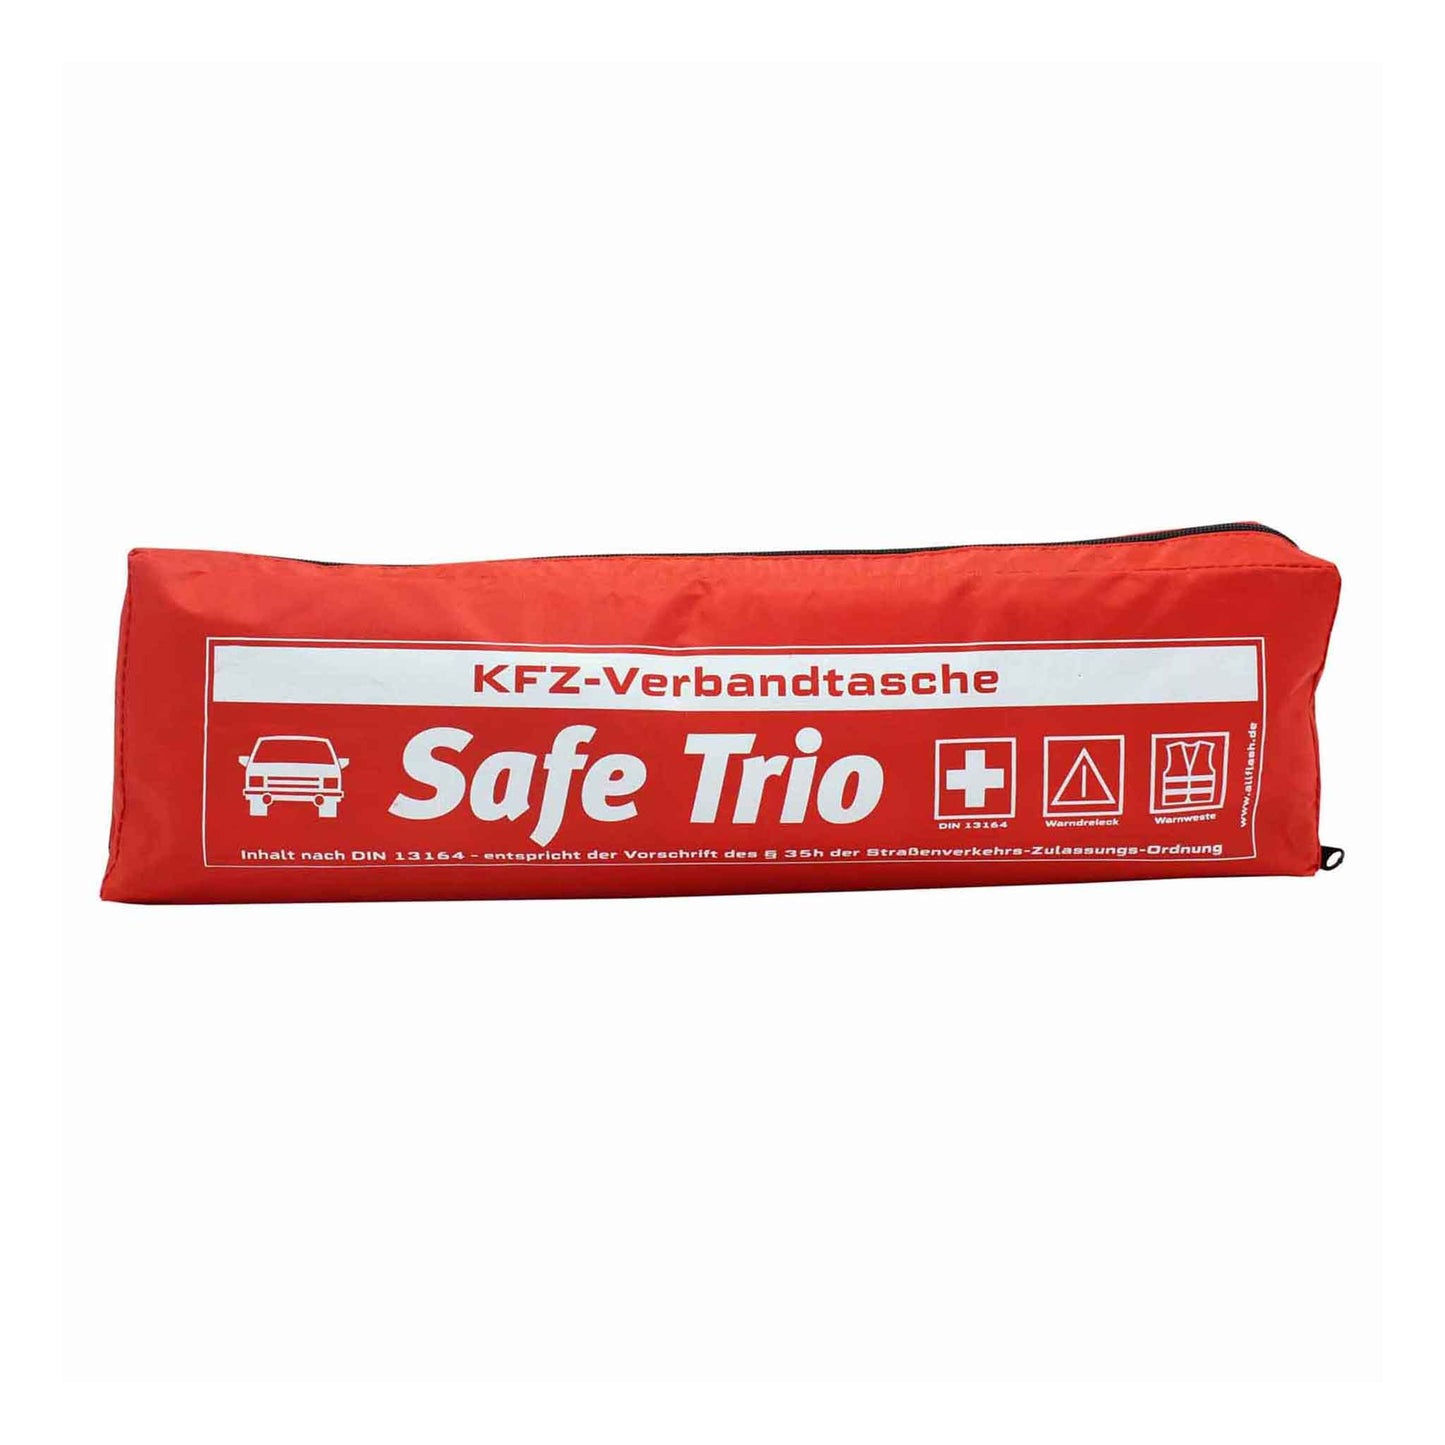 Kfz-Verbandstasche 'Safe Trio Standard' - Ihr treuer Begleiter in jeder Situation